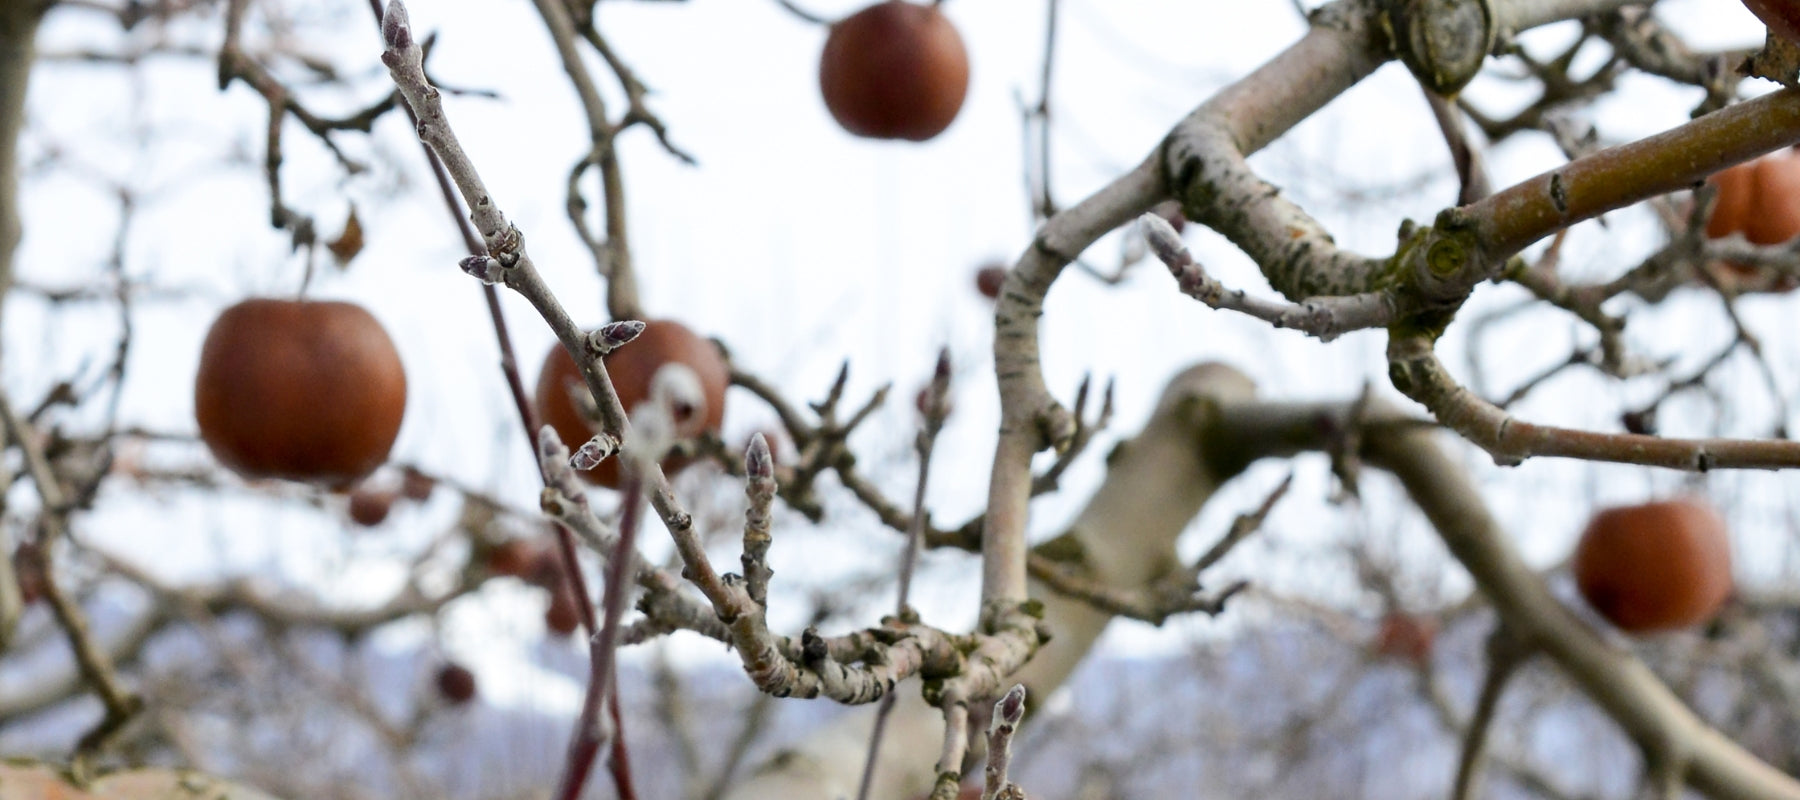 Apple tree in winter